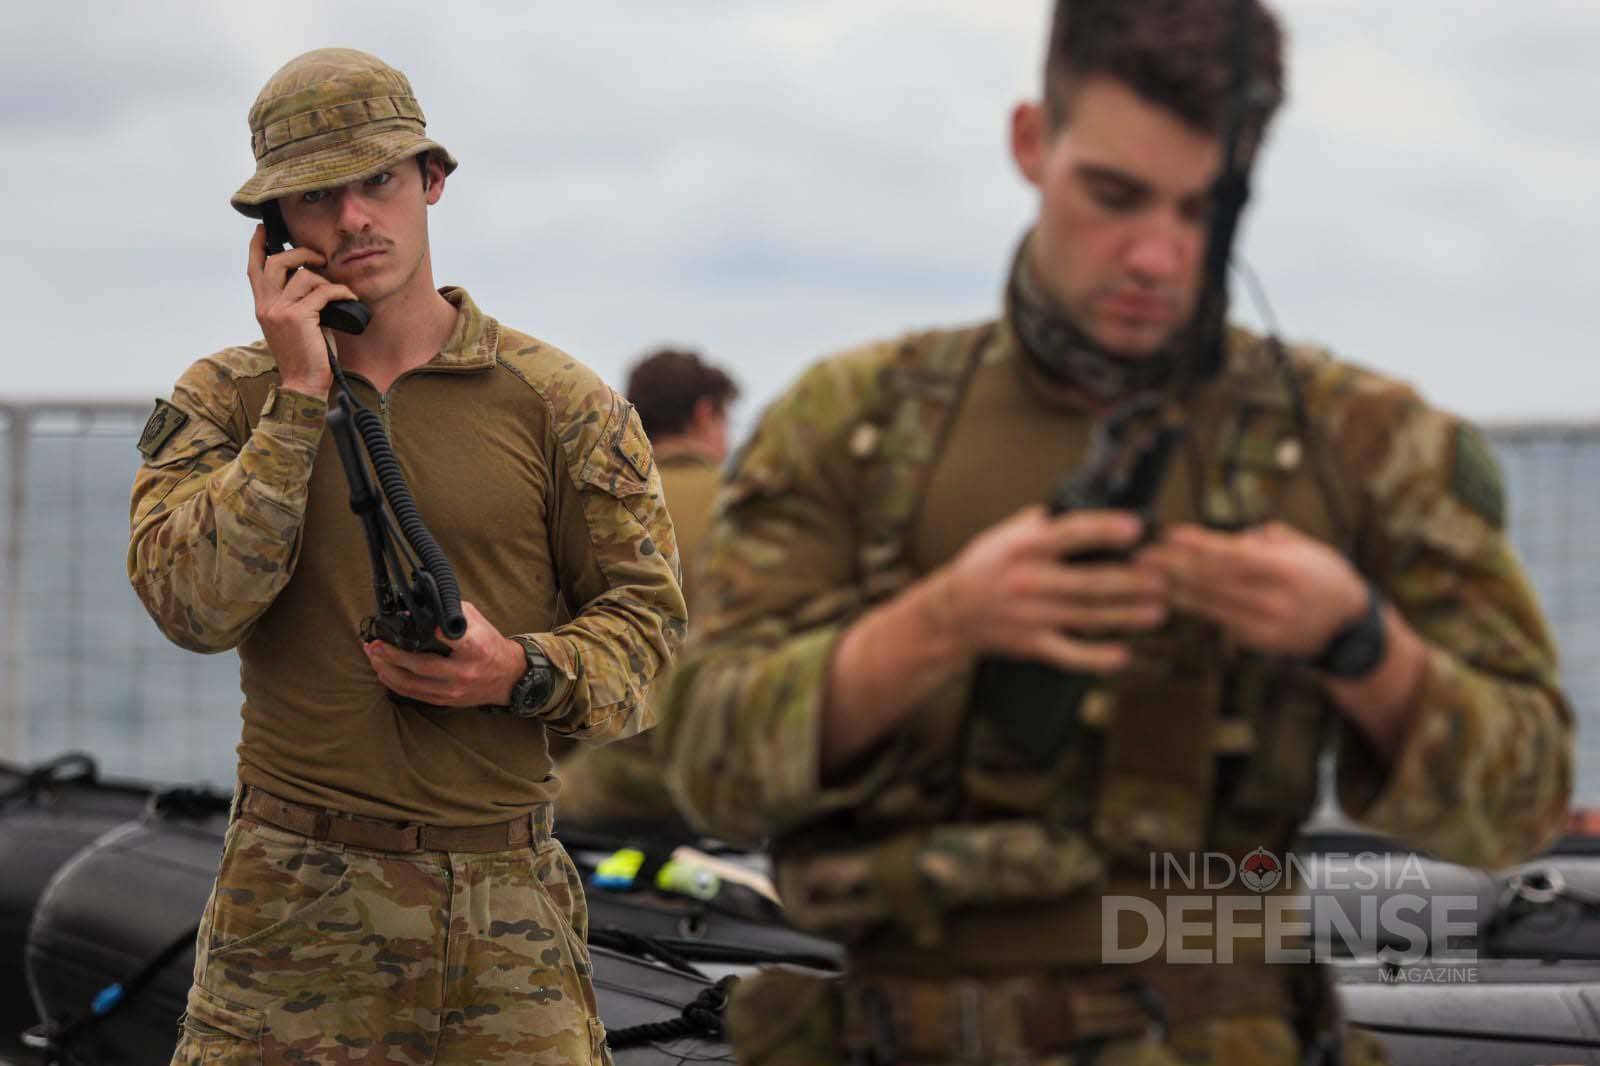 Pasukan Australia Defense Force (ADF) Tiba di KRI Banjarmasin